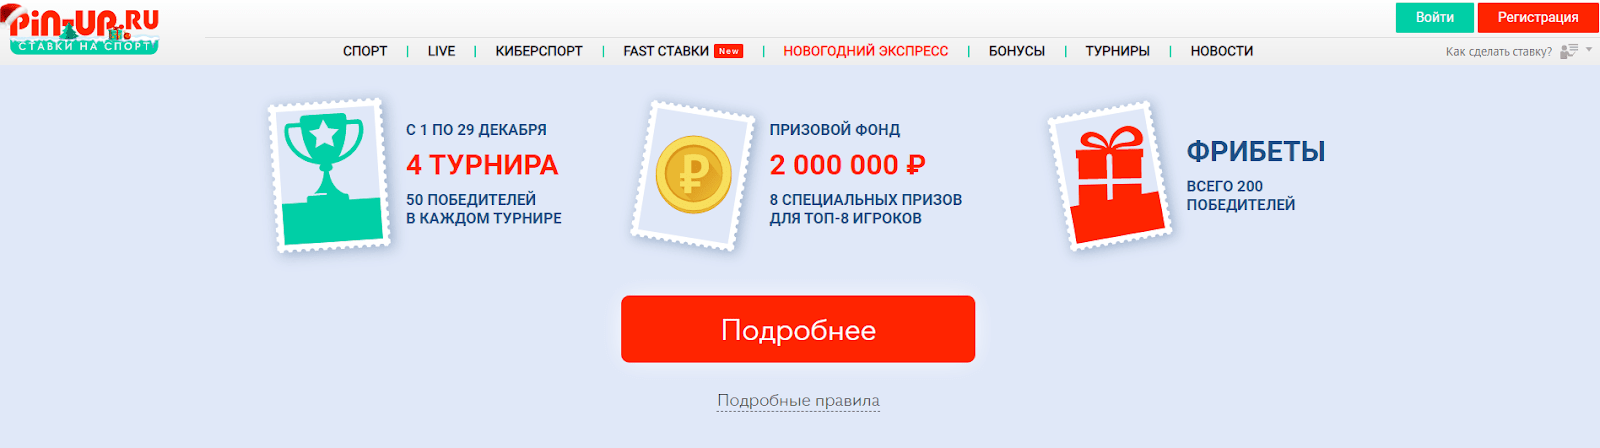 Участие в новогодней акции от Pin-up.ru